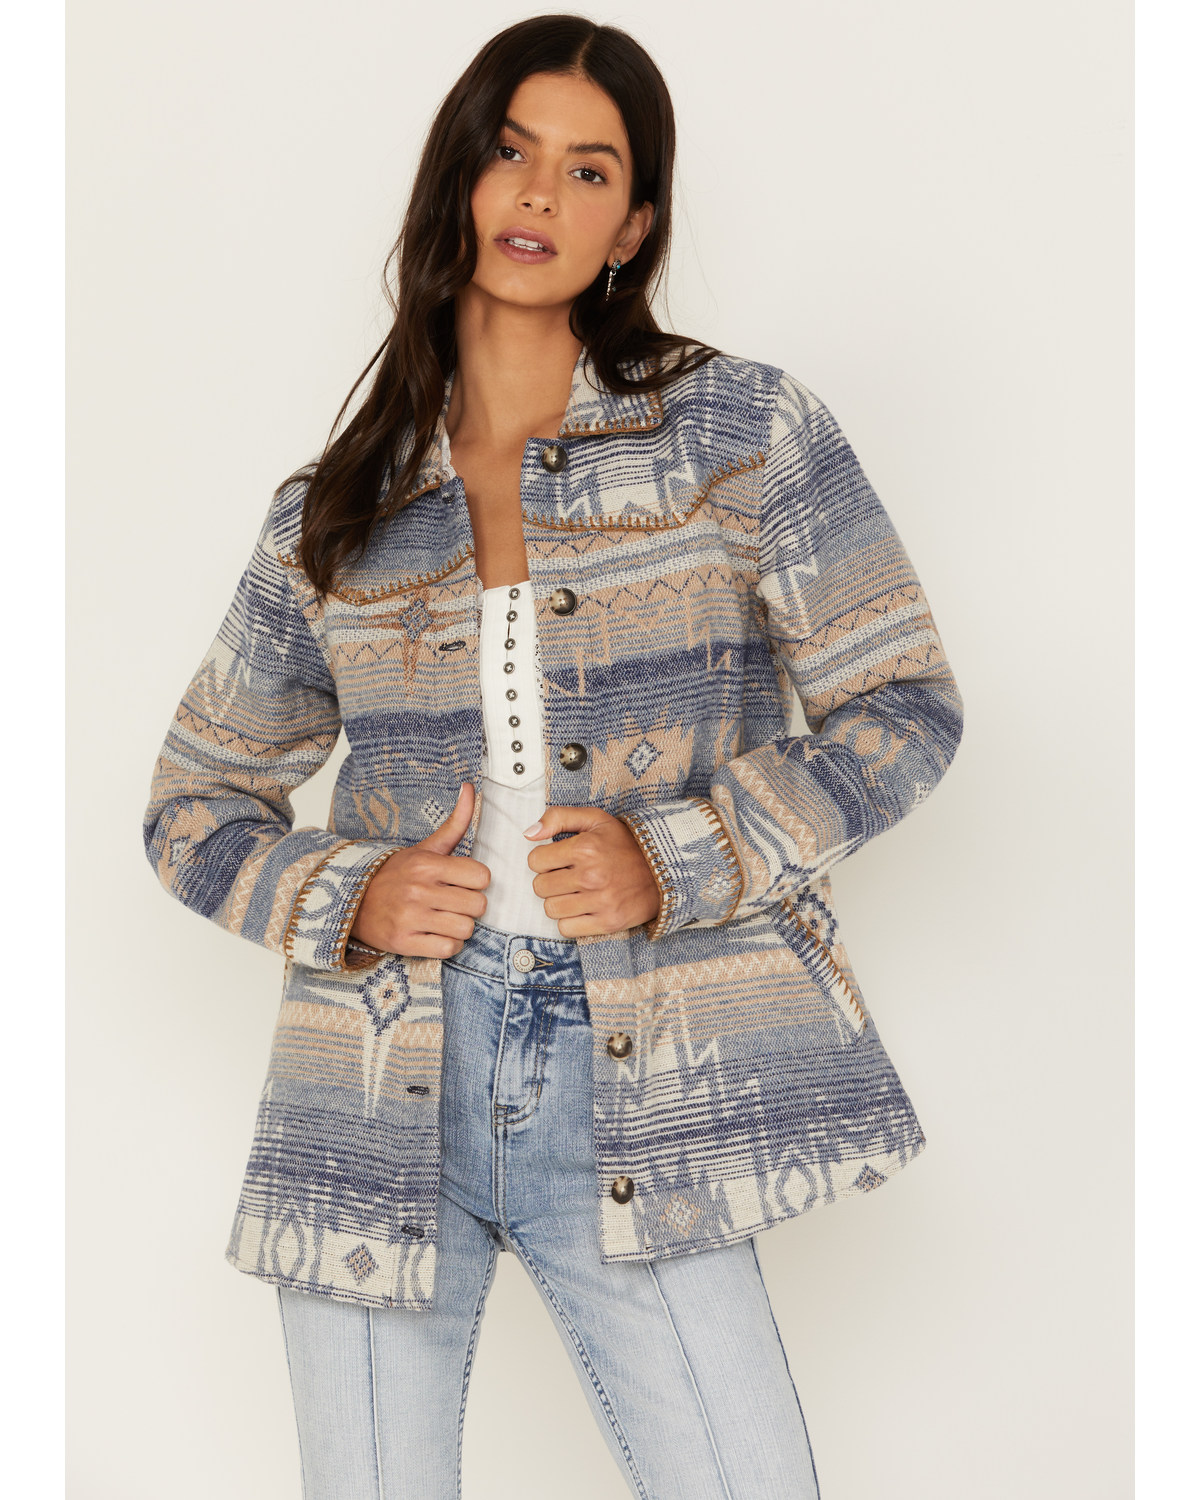 Idyllwind Women's Sanford Whip Stitch Blanket Jacket